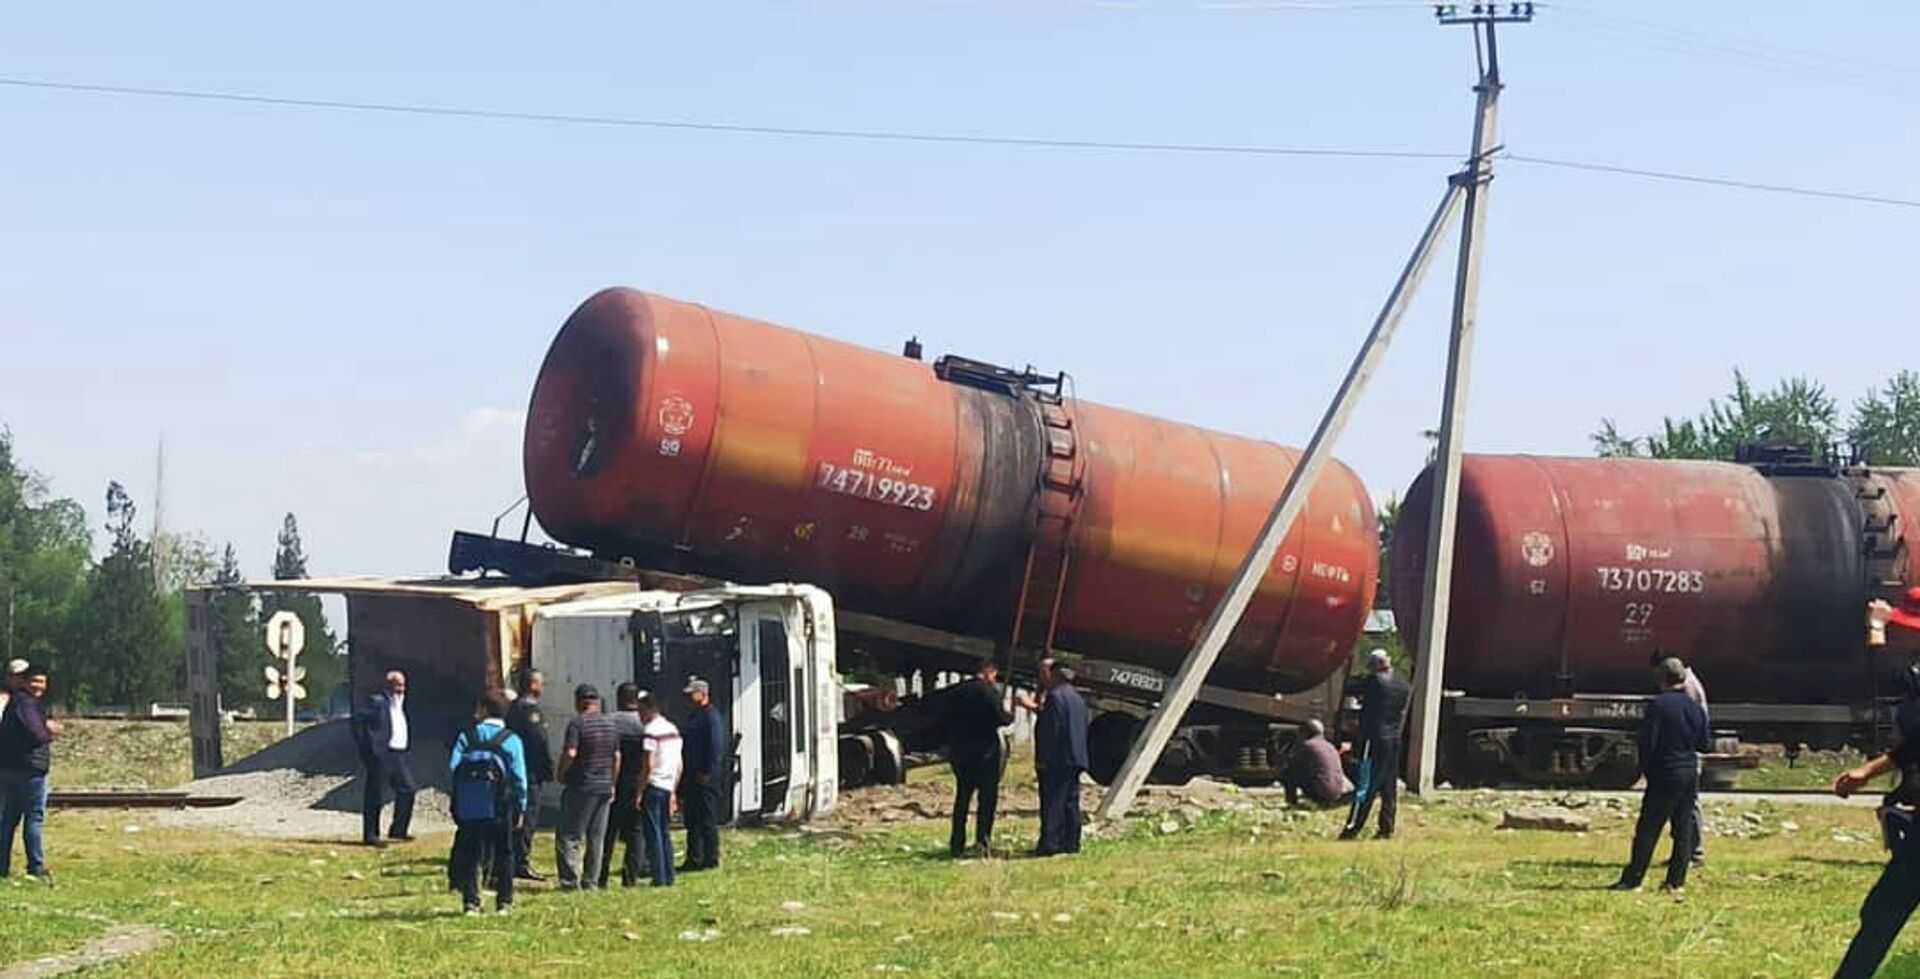 Поезд протаранил грузовик в Джалал-Абаде — фото МЧС - Sputnik Кыргызстан, 1920, 26.04.2021